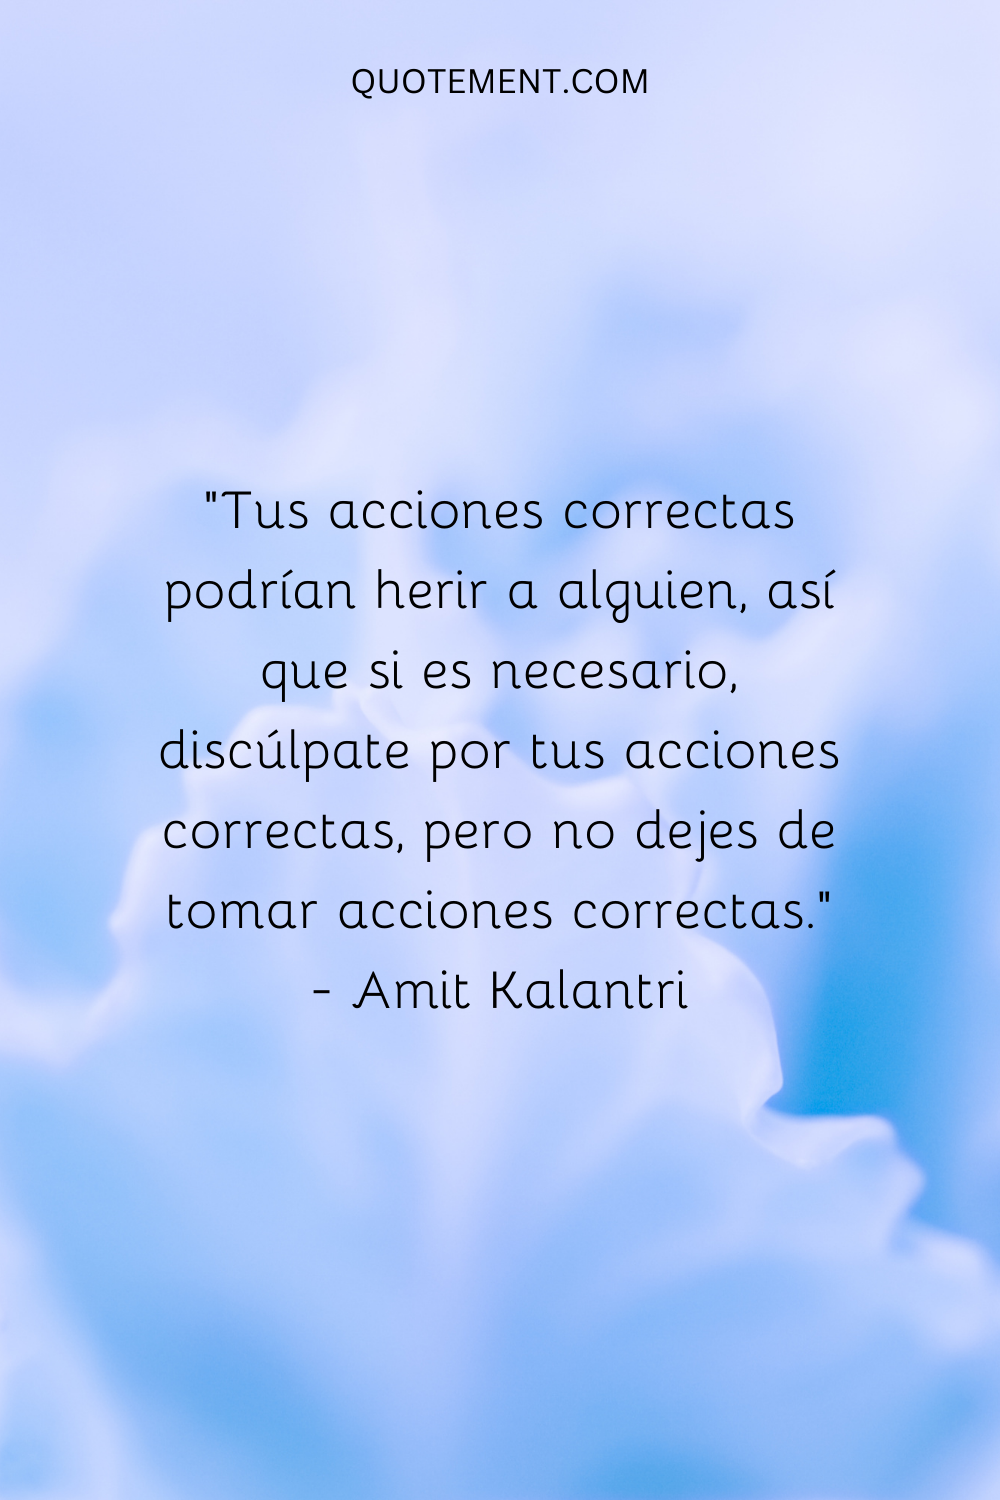 "Tus acciones correctas pueden herir a alguien, así que, si es necesario, discúlpate por tus acciones correctas, pero no dejes de realizar acciones correctas". - Amit Kalantri